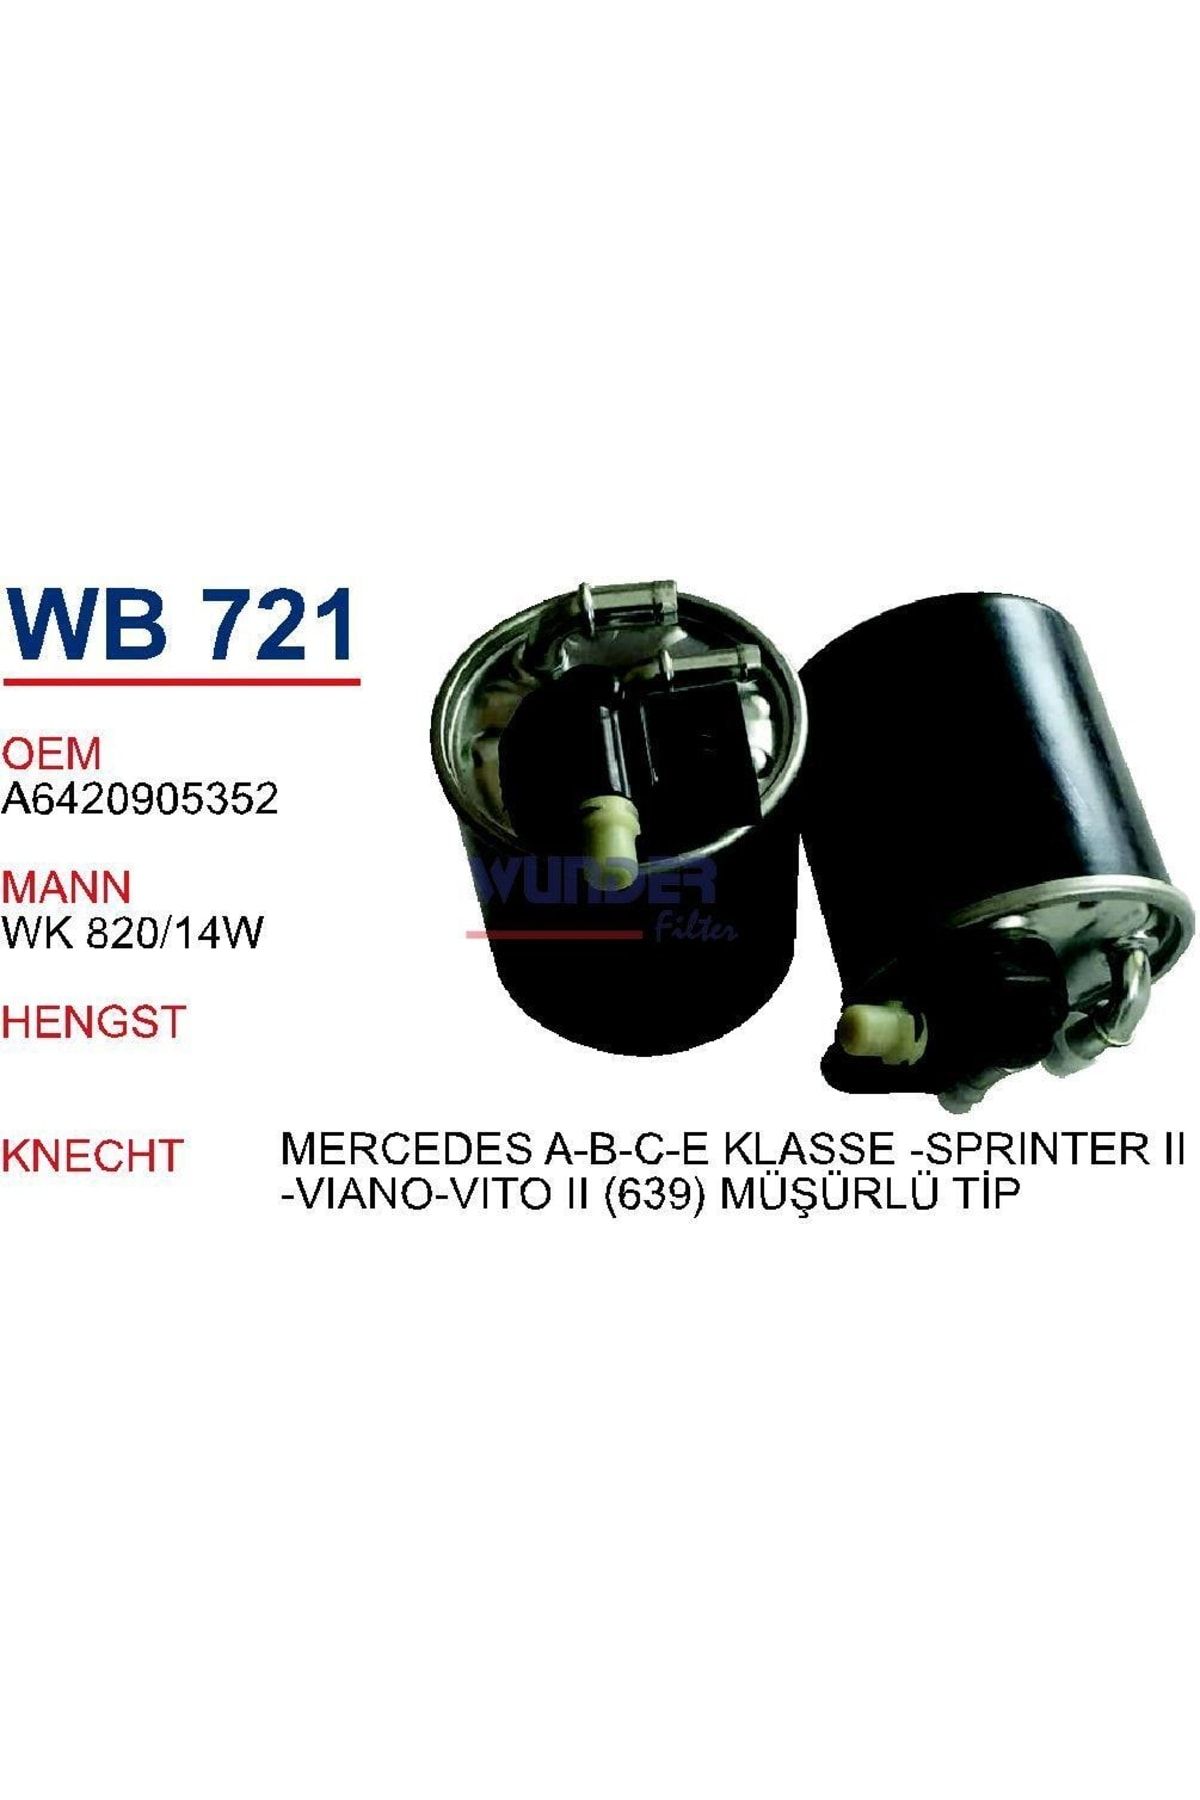 WUNDER Wb721 Mazot Filtresi - Mercedes A-b-c-eklasse-sprınter Iı-viano-vito Iı (639) Müşürlü Tip